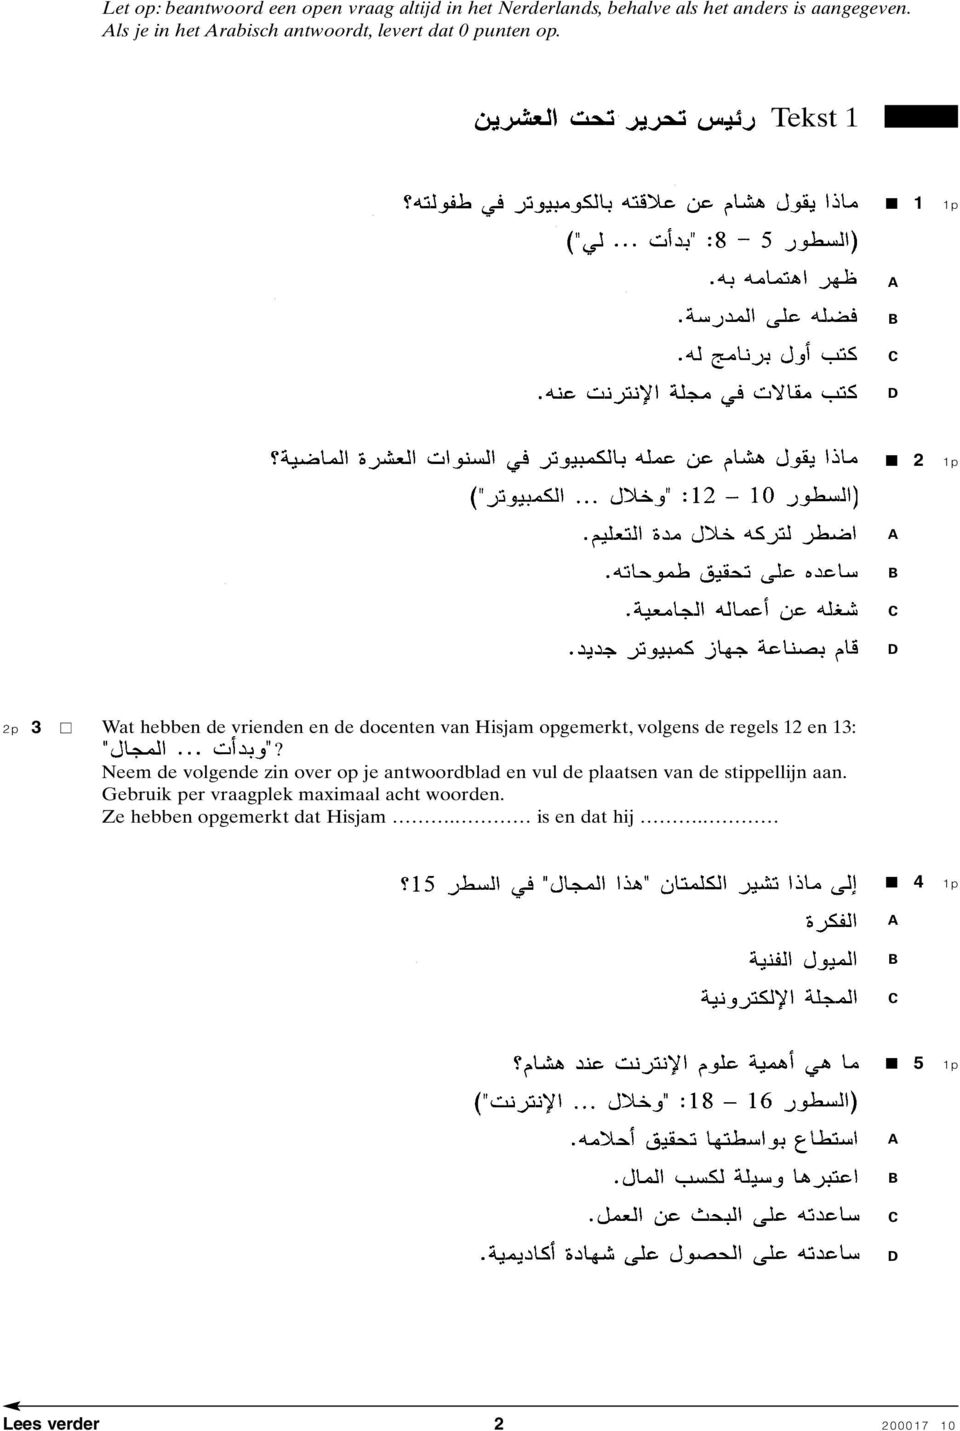 Tekst 1 1 2 2p 3 Wat hebben de vrienden en de docenten van Hisjam opgemerkt, volgens de regels 12 en 13:?